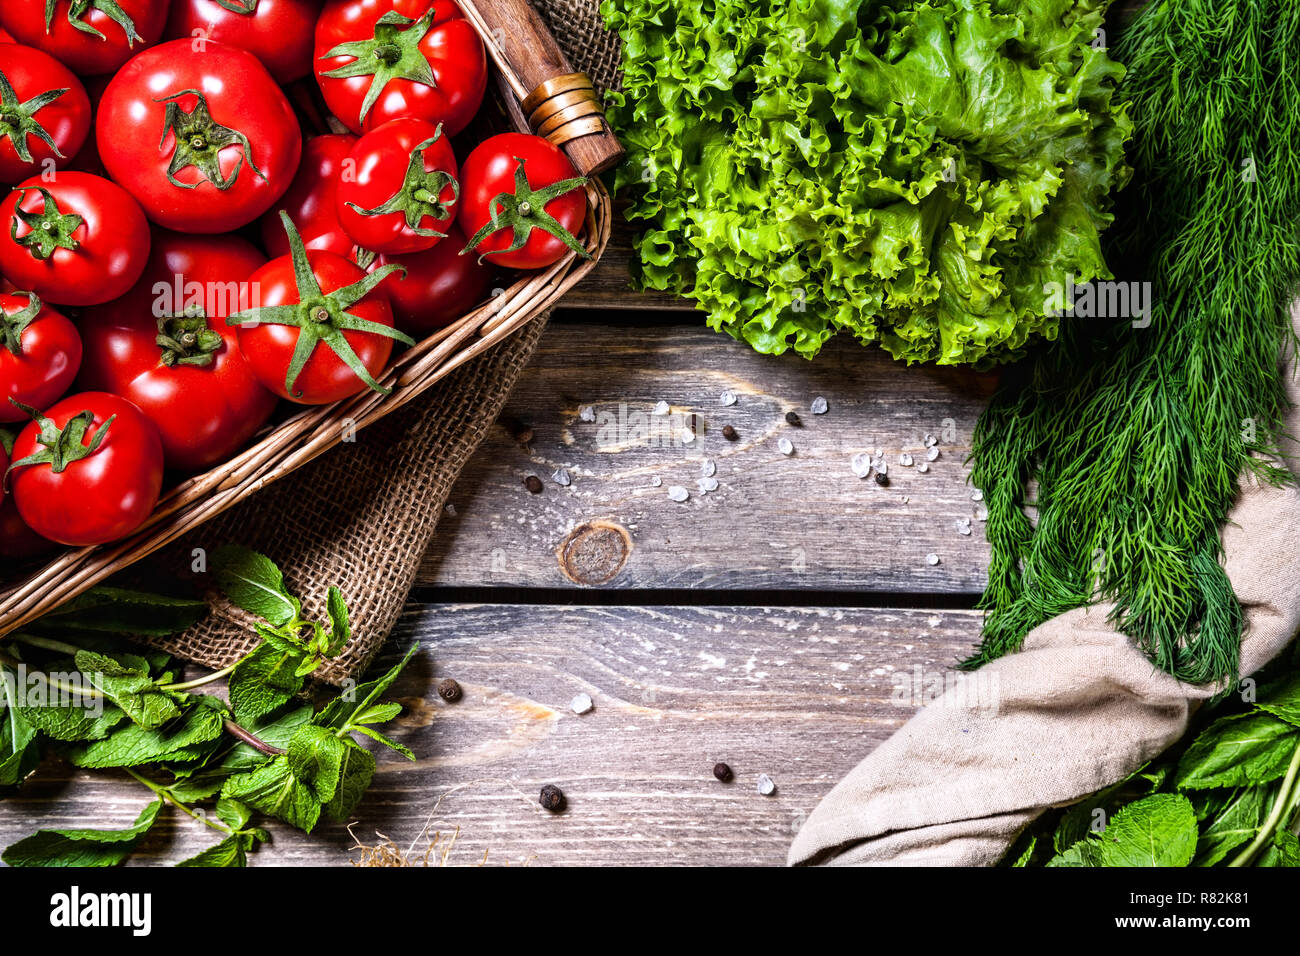 La Tomate et légumes verts sur la table en bois dans la cuisine Banque D'Images